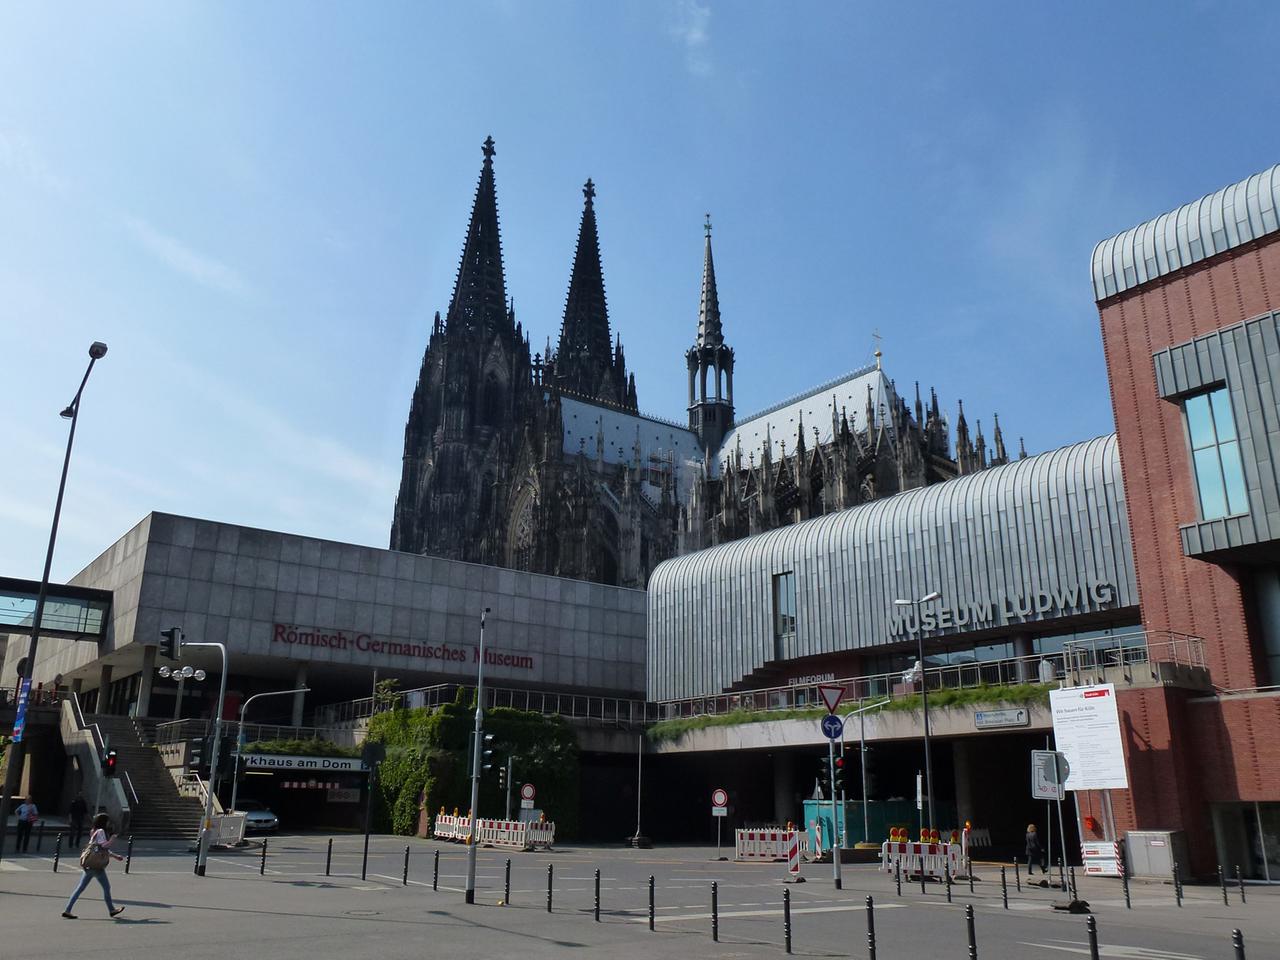 Köln, Stadtansicht - das römisch germanische Museum, das Museum Ludwig und der Kölner Dom